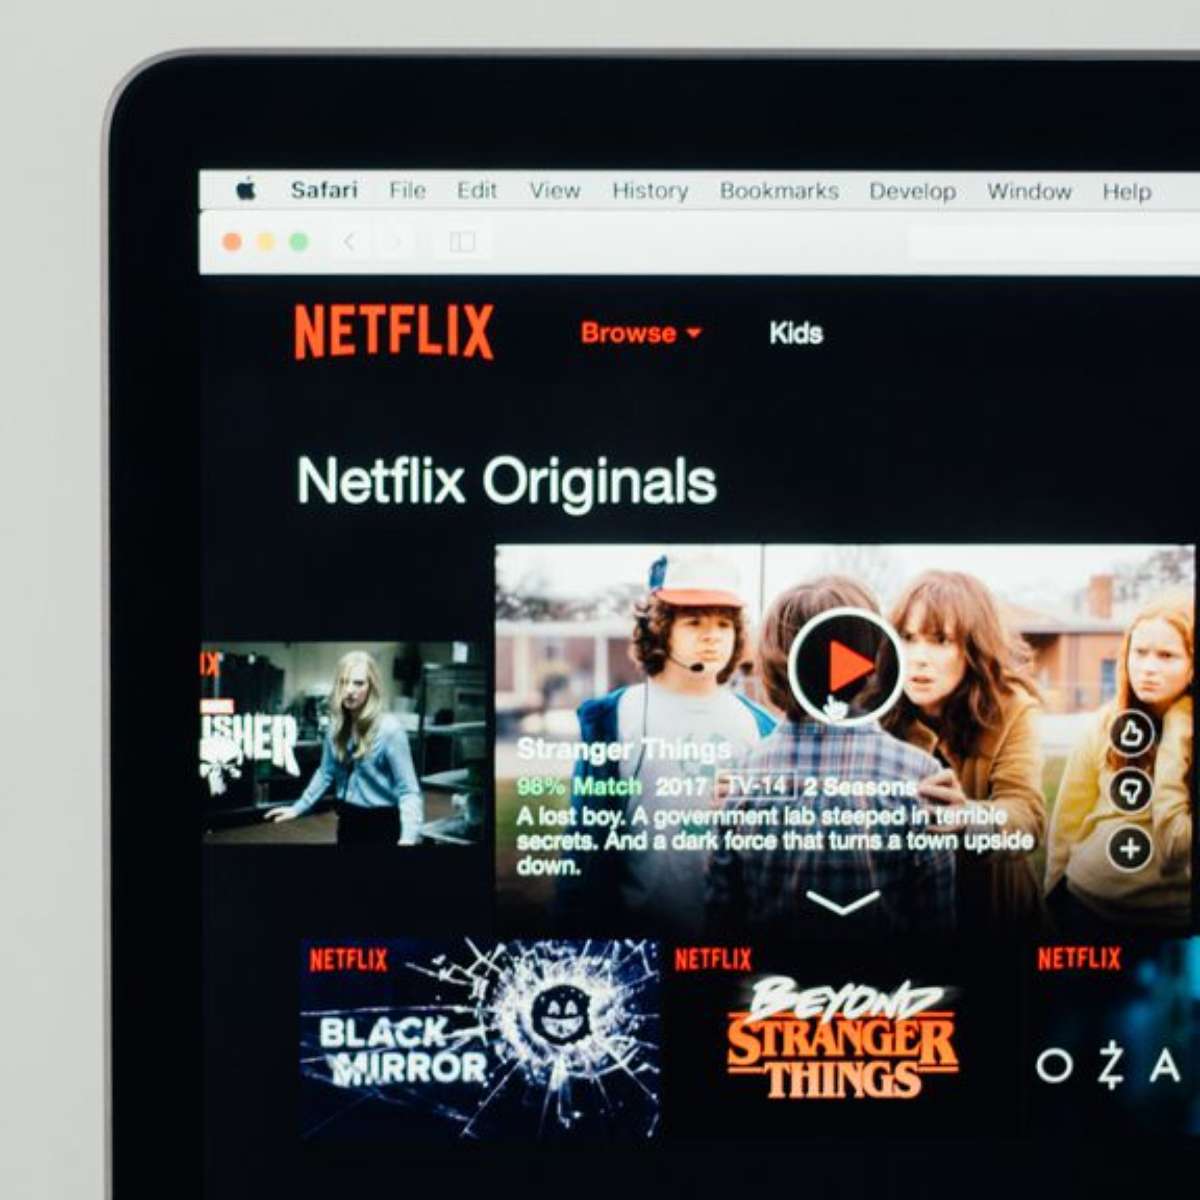 Planos Netflix: conheça os preços e benefícios de cada assinatura